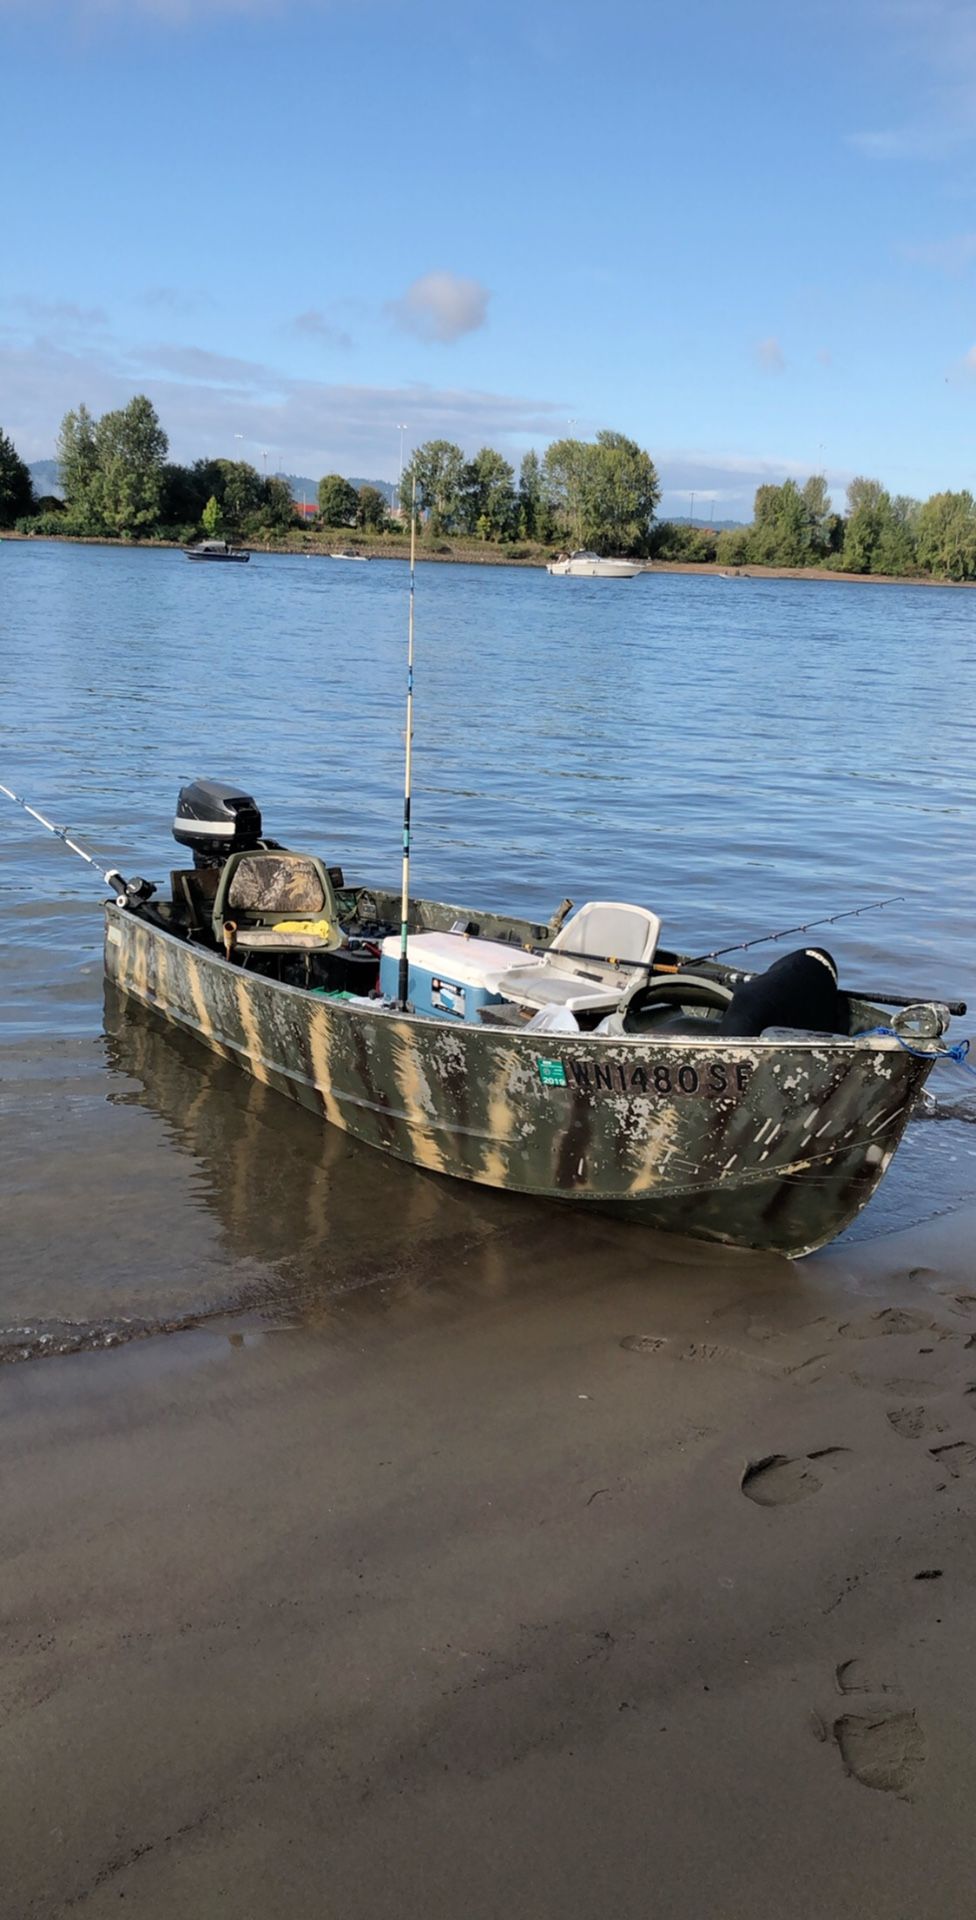 Aluminum fishing boat